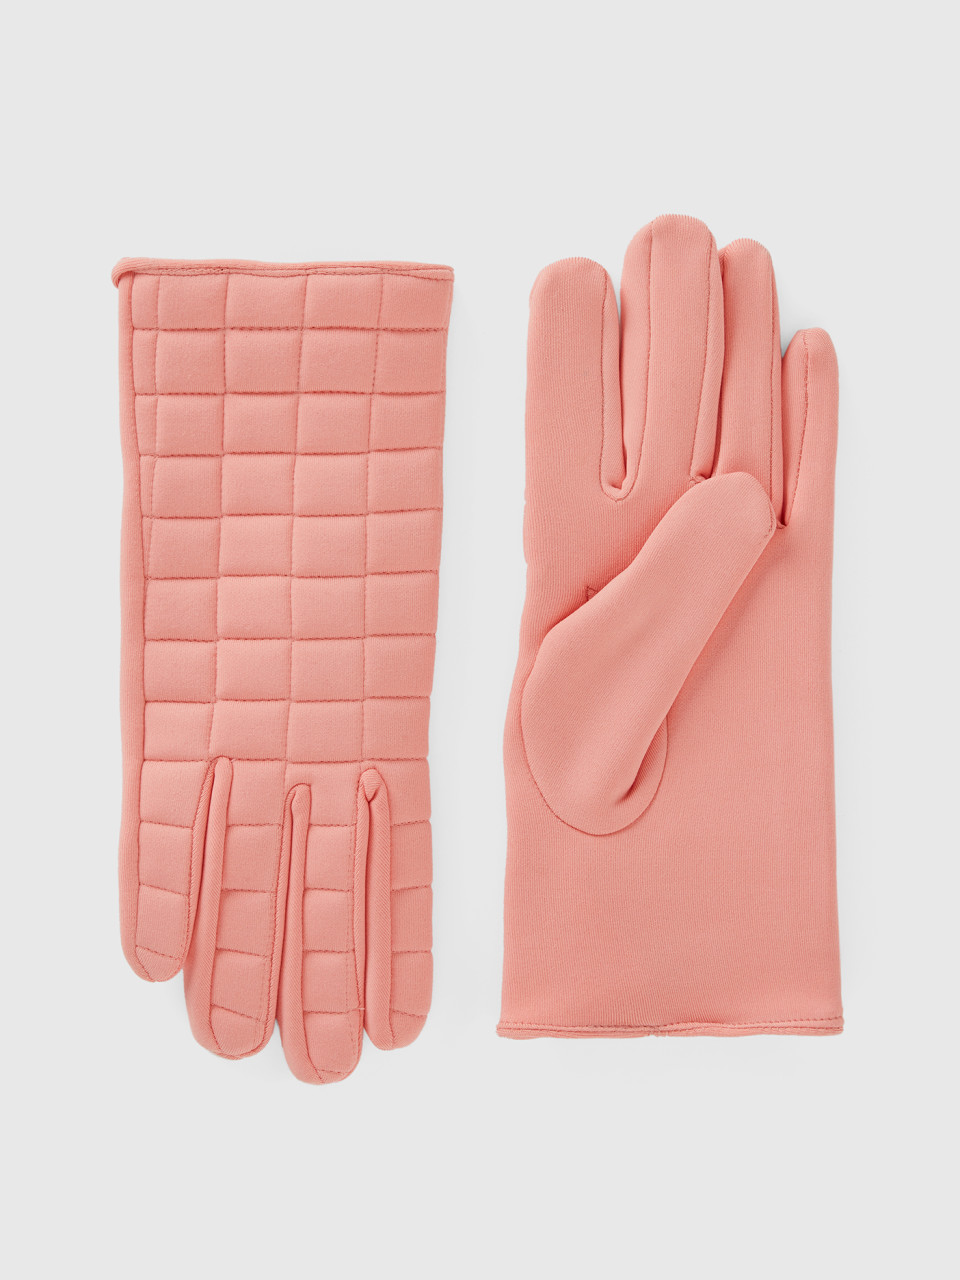 Benetton, Padded Nylon Gloves, Pink, Women